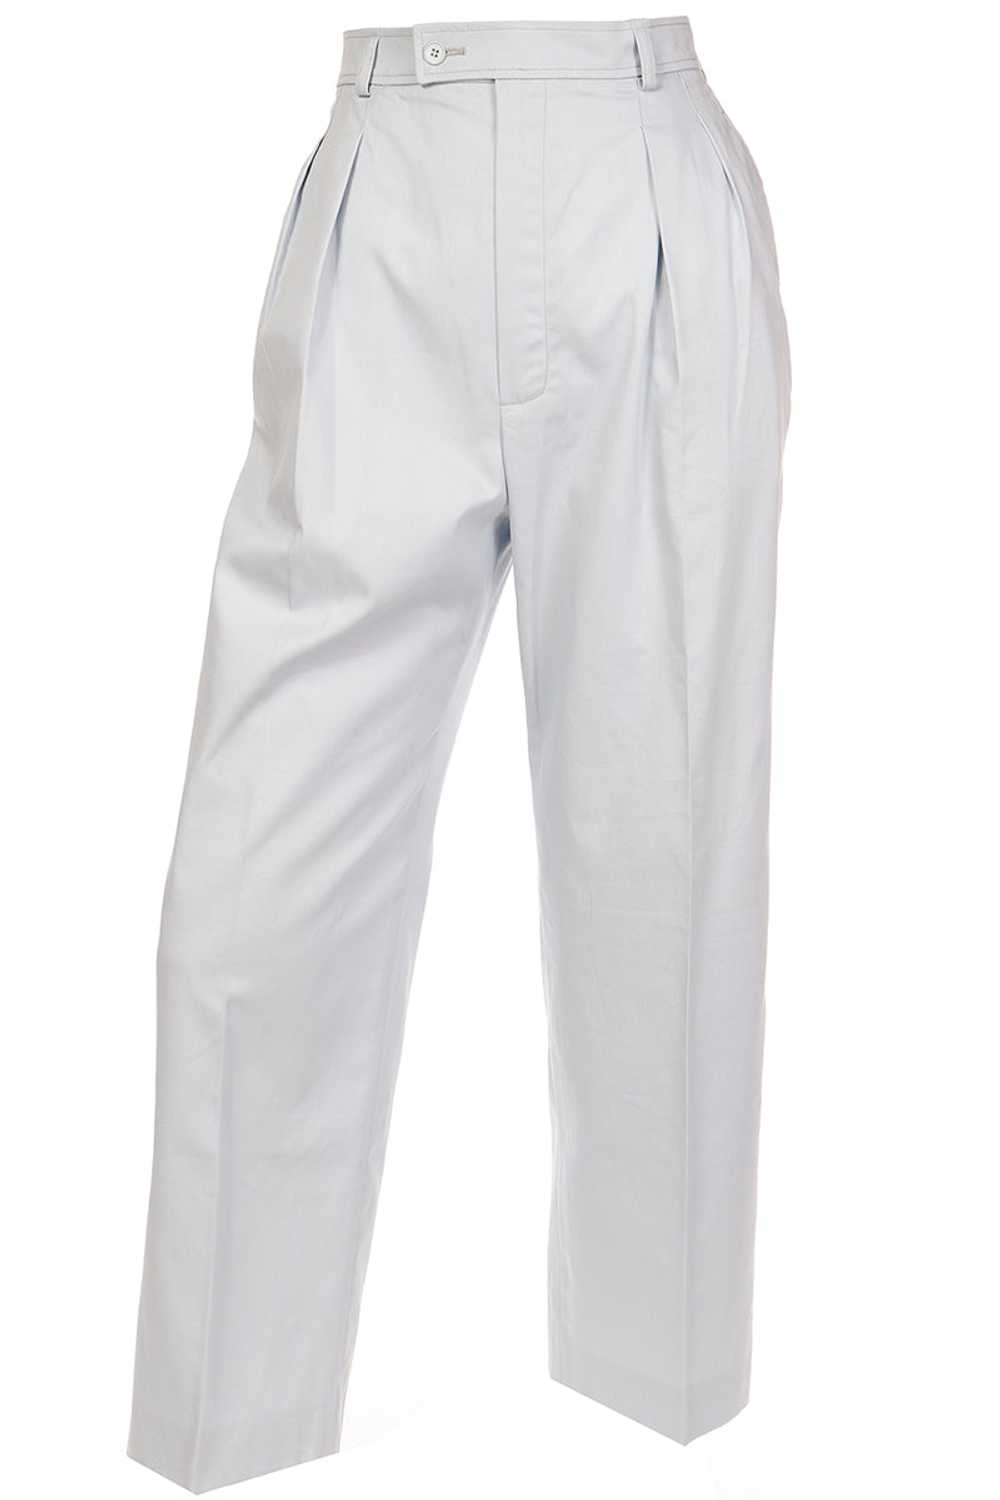 1980s Yves Saint Laurent Pale Blue Pants Cotton T… - image 1